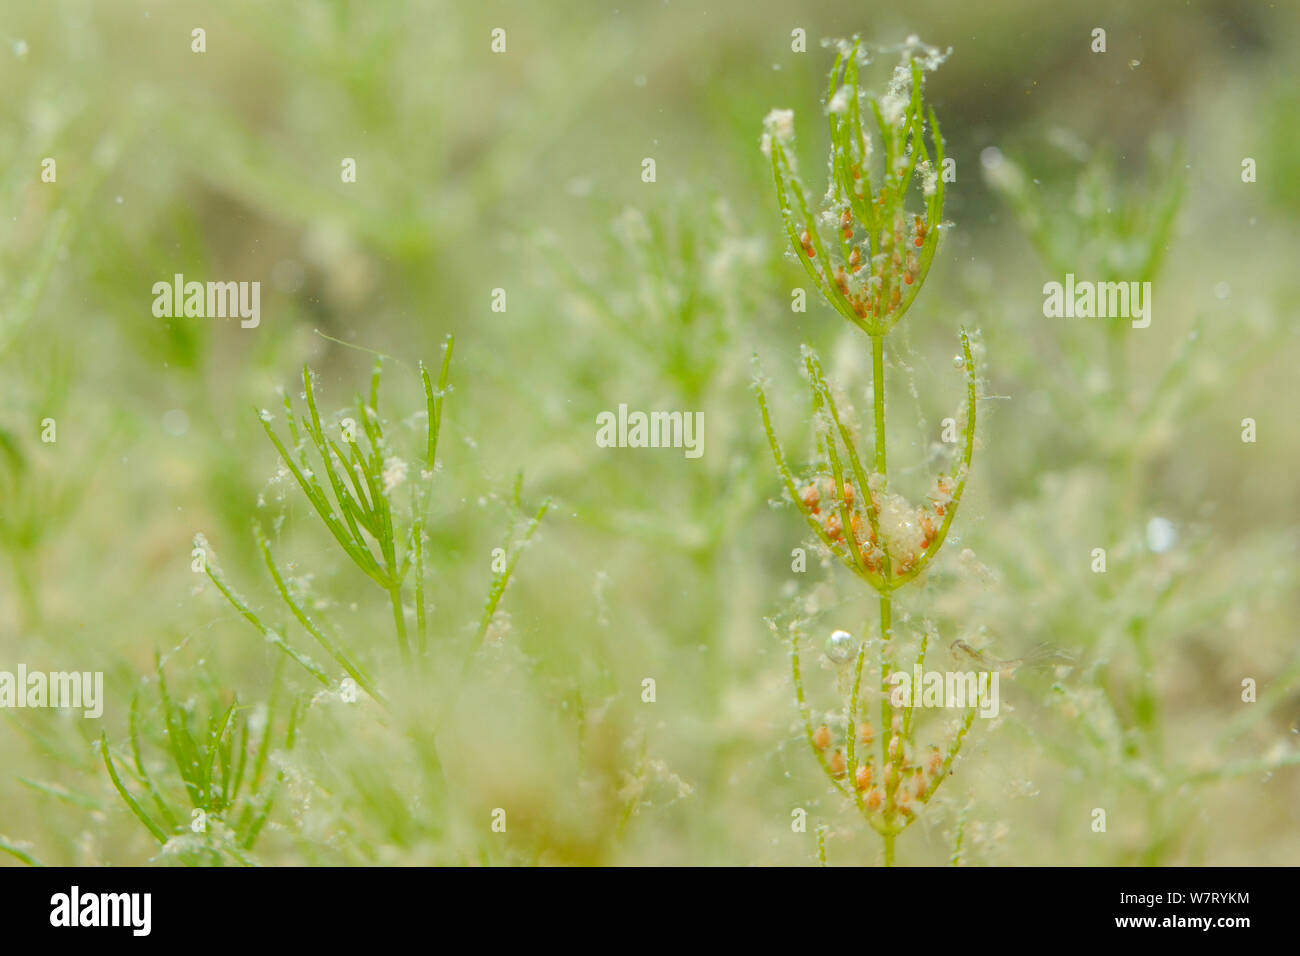 Delicado stonewort (Chara virgata) a la izquierda sin esporangios y a la derecha con esporangios. Rojo (masculino) anteridios y marrón, en forma de frasco (hembra) archegonia, Marlborough Downs, Wiltshire, UK, Septiembre. Foto de stock